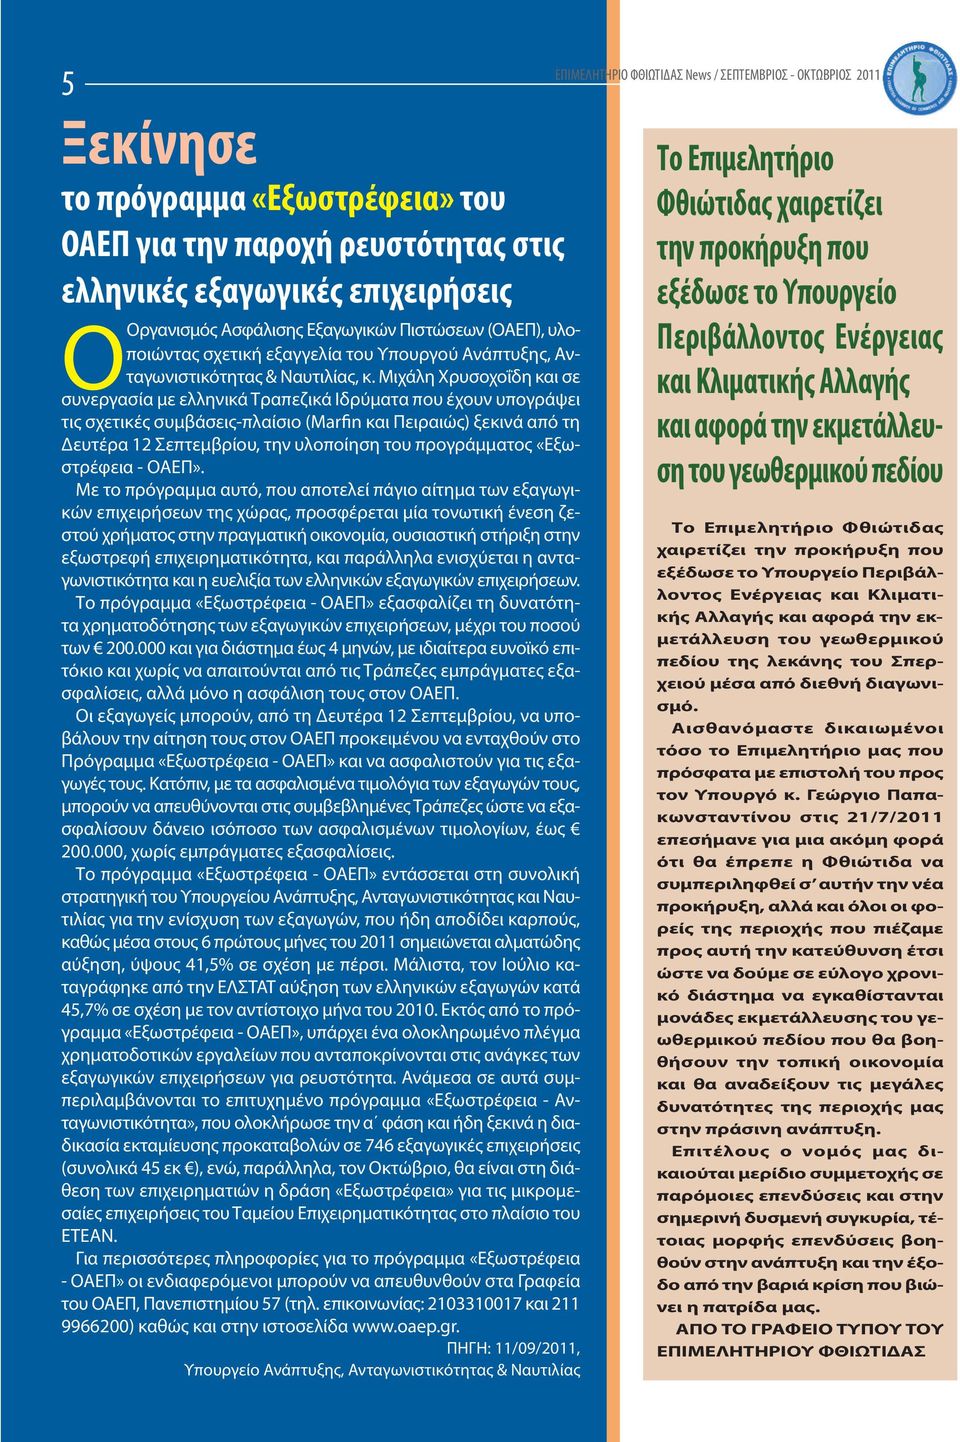 Μιχάλη Χρυσοχοΐδη και σε συνεργασία με ελληνικά Τραπεζικά Ιδρύματα που έχουν υπογράψει τις σχετικές συμβάσεις-πλαίσιο (Marfin και Πειραιώς) ξεκινά από τη Δευτέρα 12 Σεπτεμβρίου, την υλοποίηση του